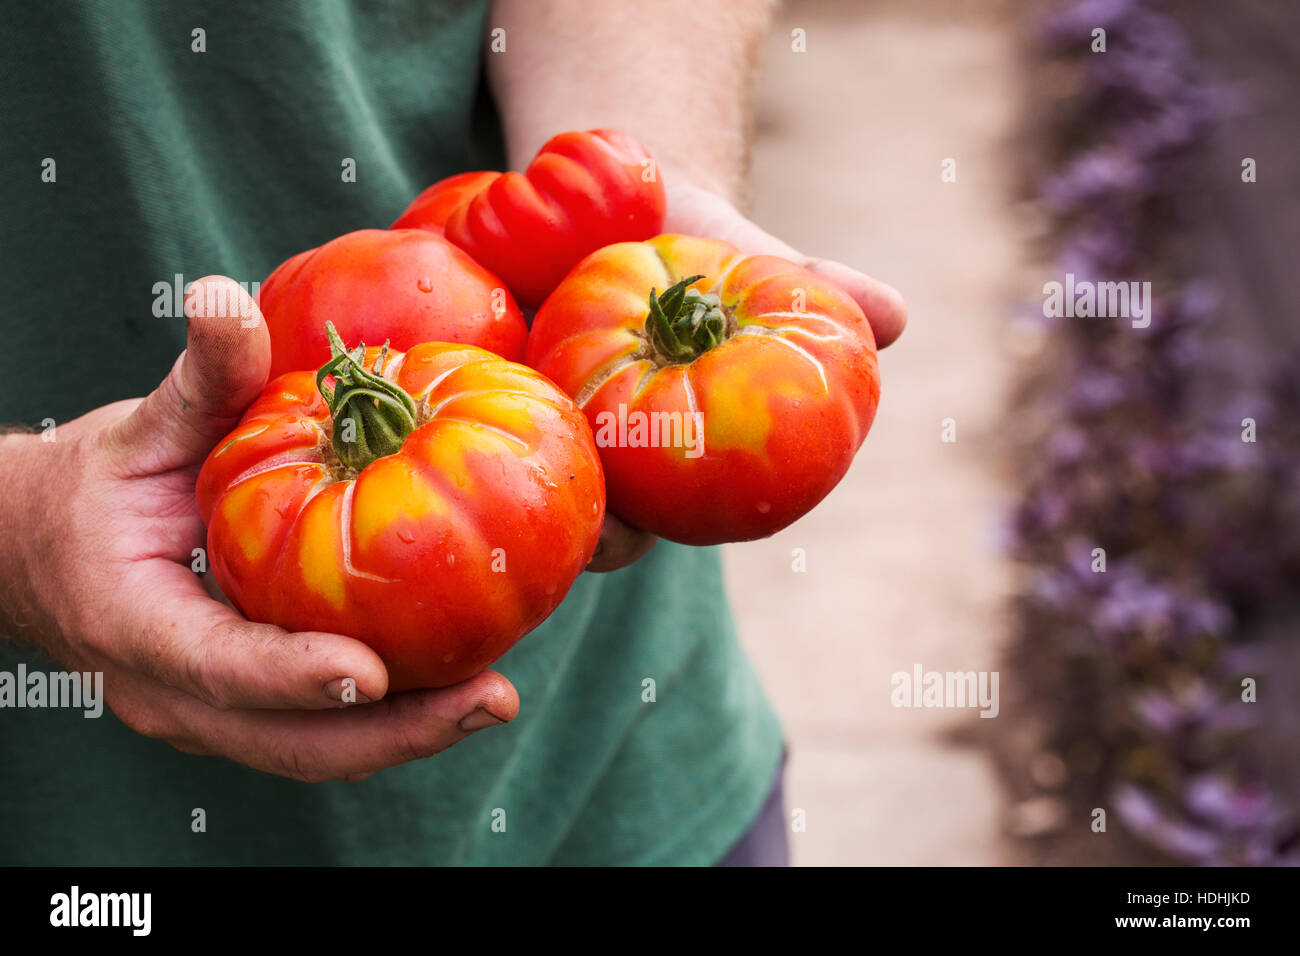 Una persona in possesso di una manciata di appena raccolto grandi striped bistecca di manzo pomodori. Foto Stock